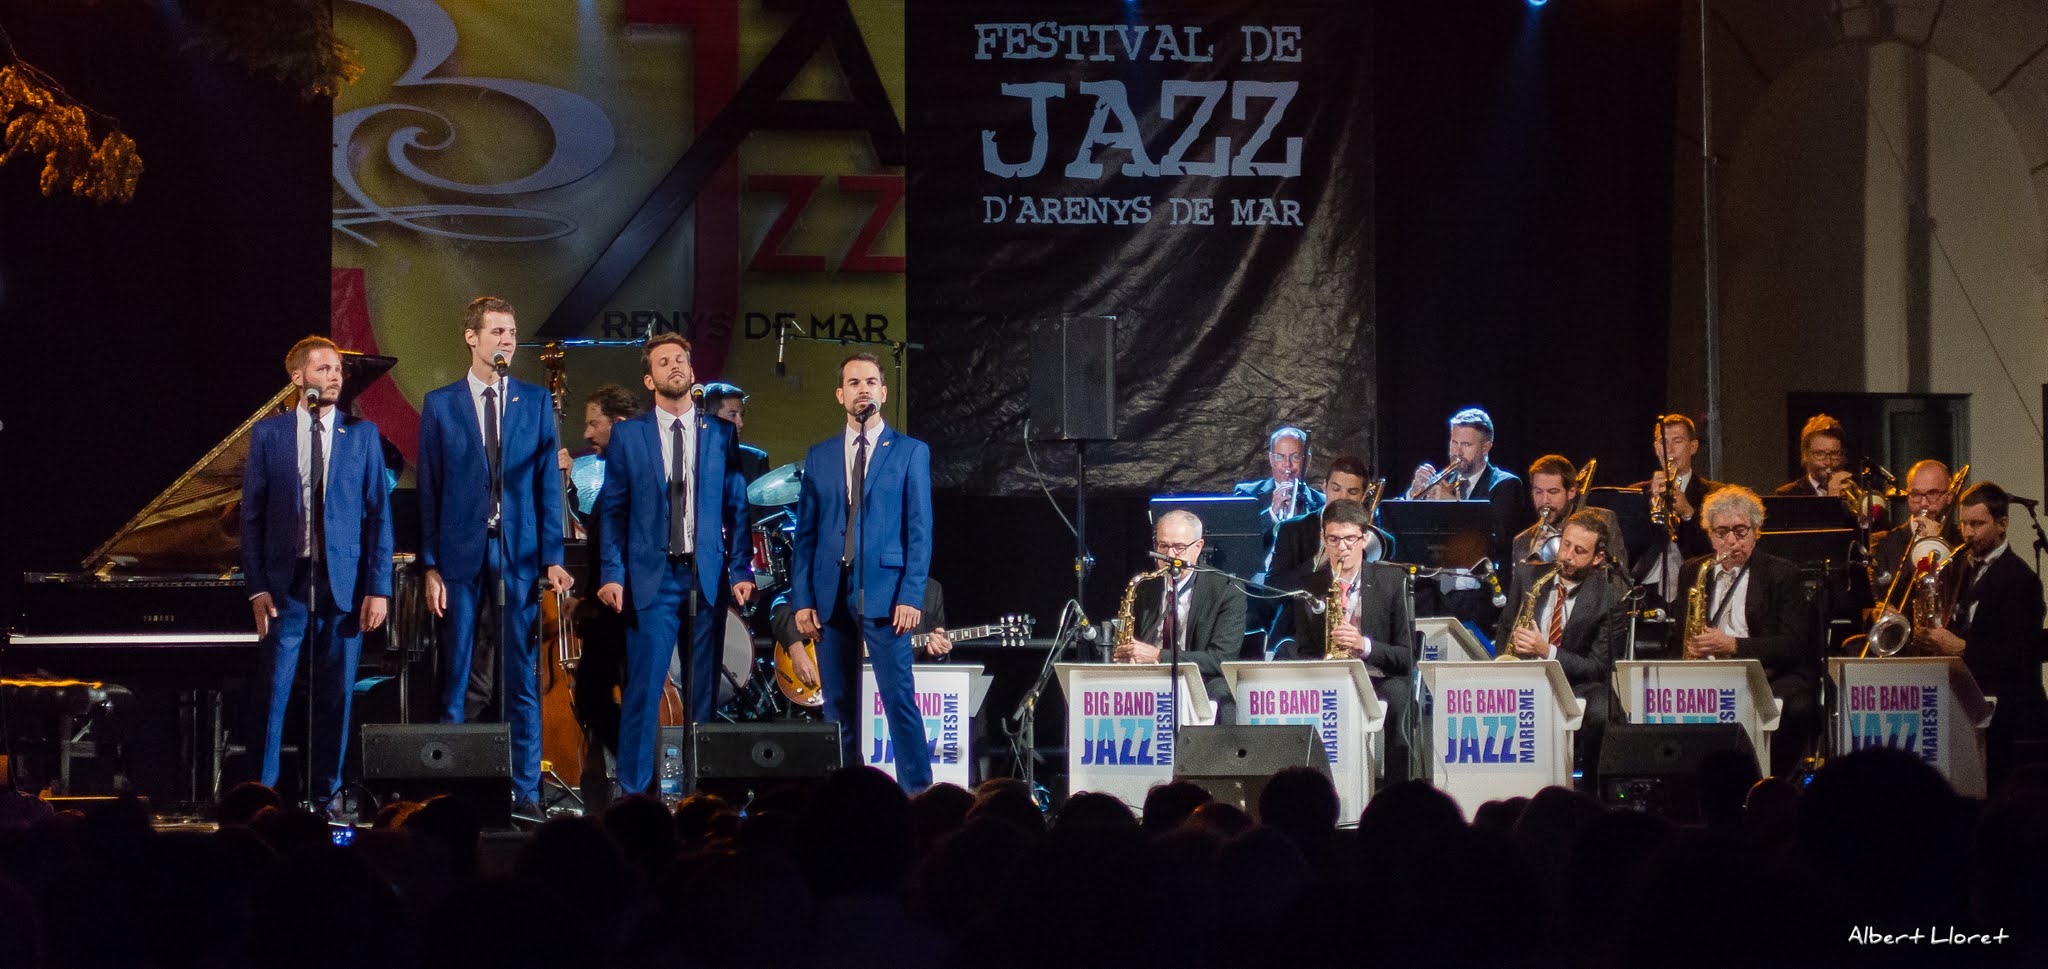 Imatges del 25 Festival de Jazz d'Arenys de Mar - 2016 - Foto 82656712